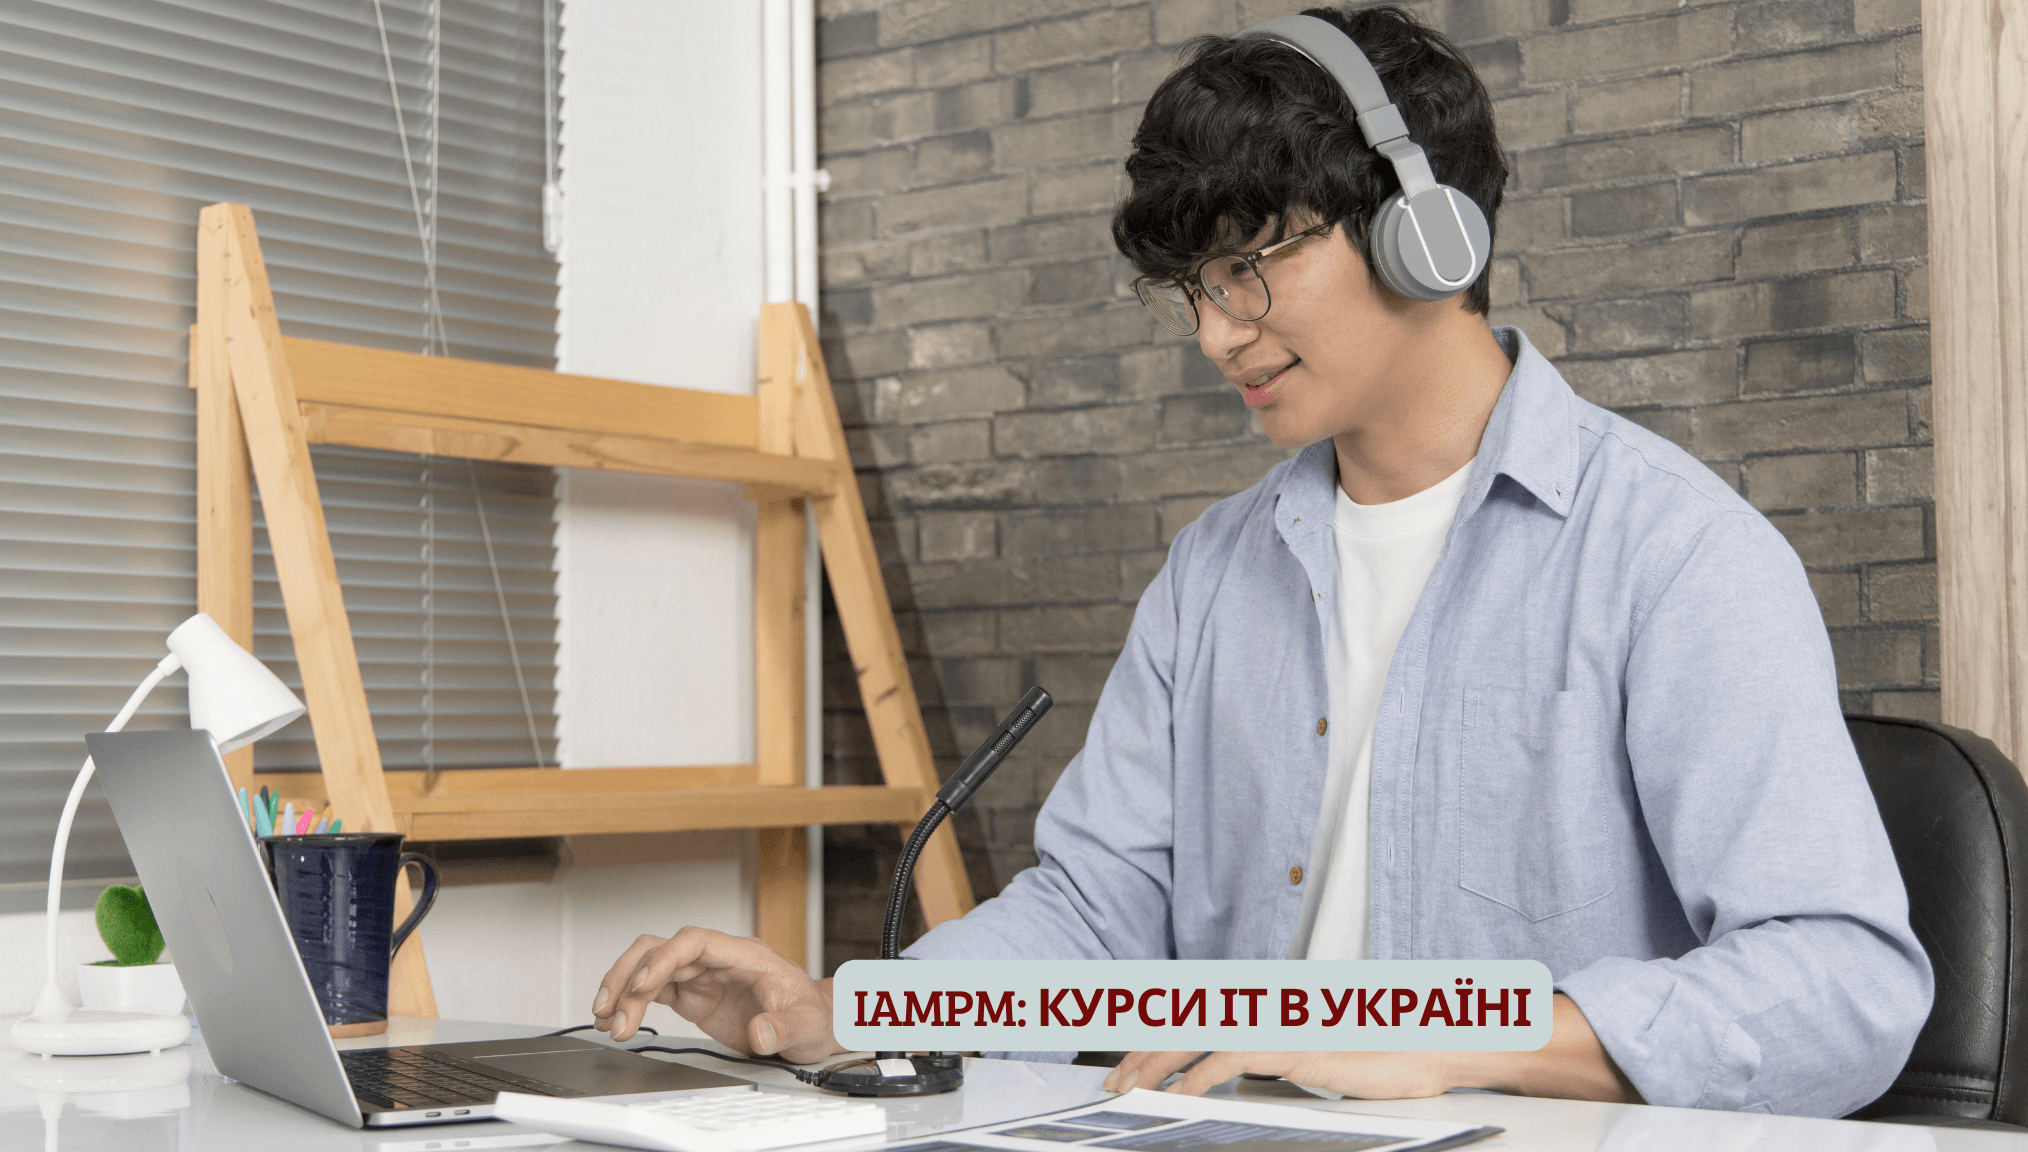 IAMPM: курси ІТ в Україні, ІТ-курси, записатися, ціни, відгуки, онлайн, нетехнічне ІТ, Україна